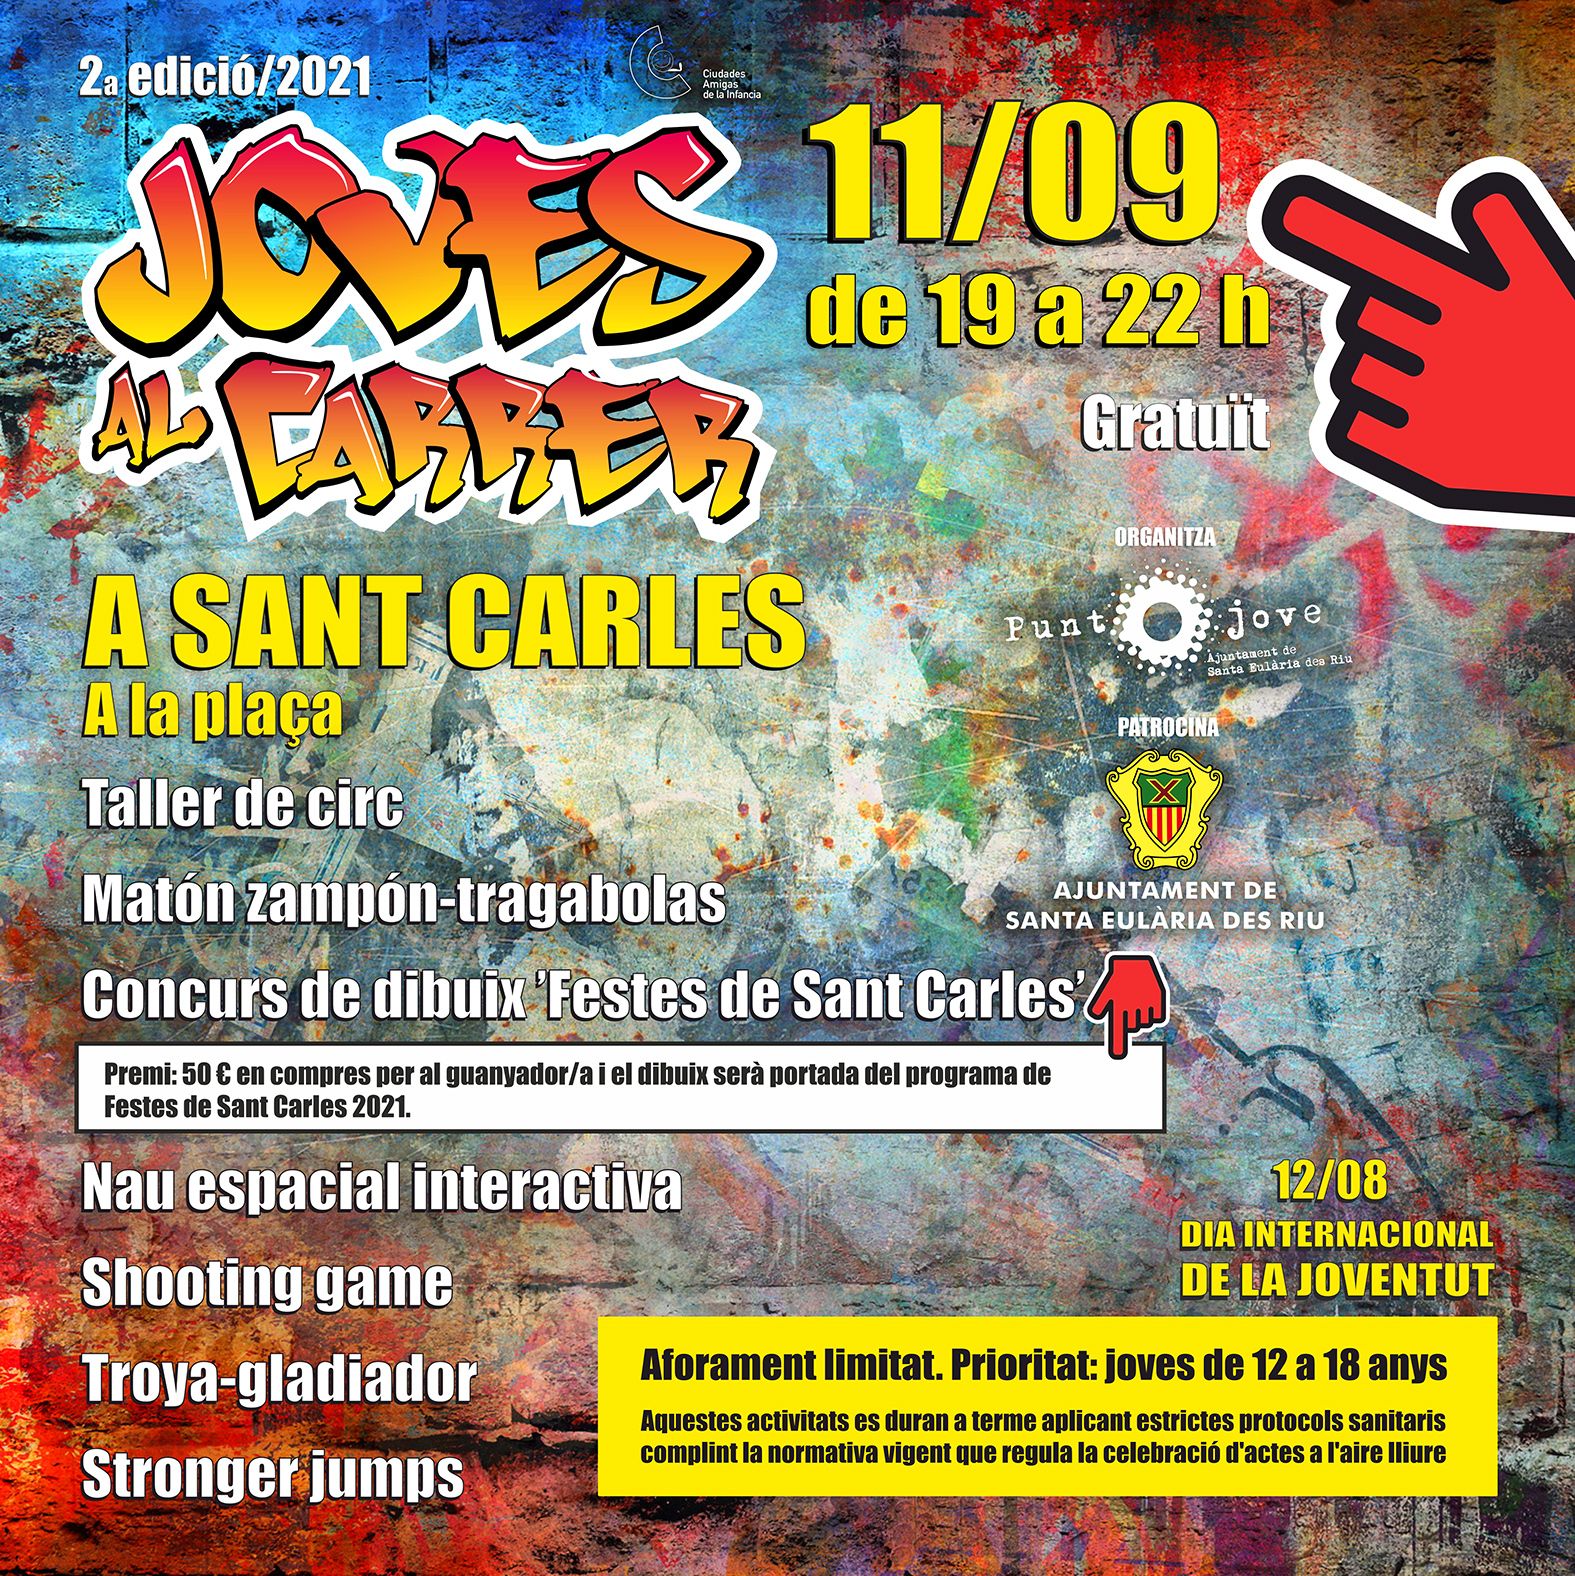 El II Joves al carrer cierra este sábado en Sant Carles con circo, shooting games y un concurso para elegir la imagen de las fiestas de la población